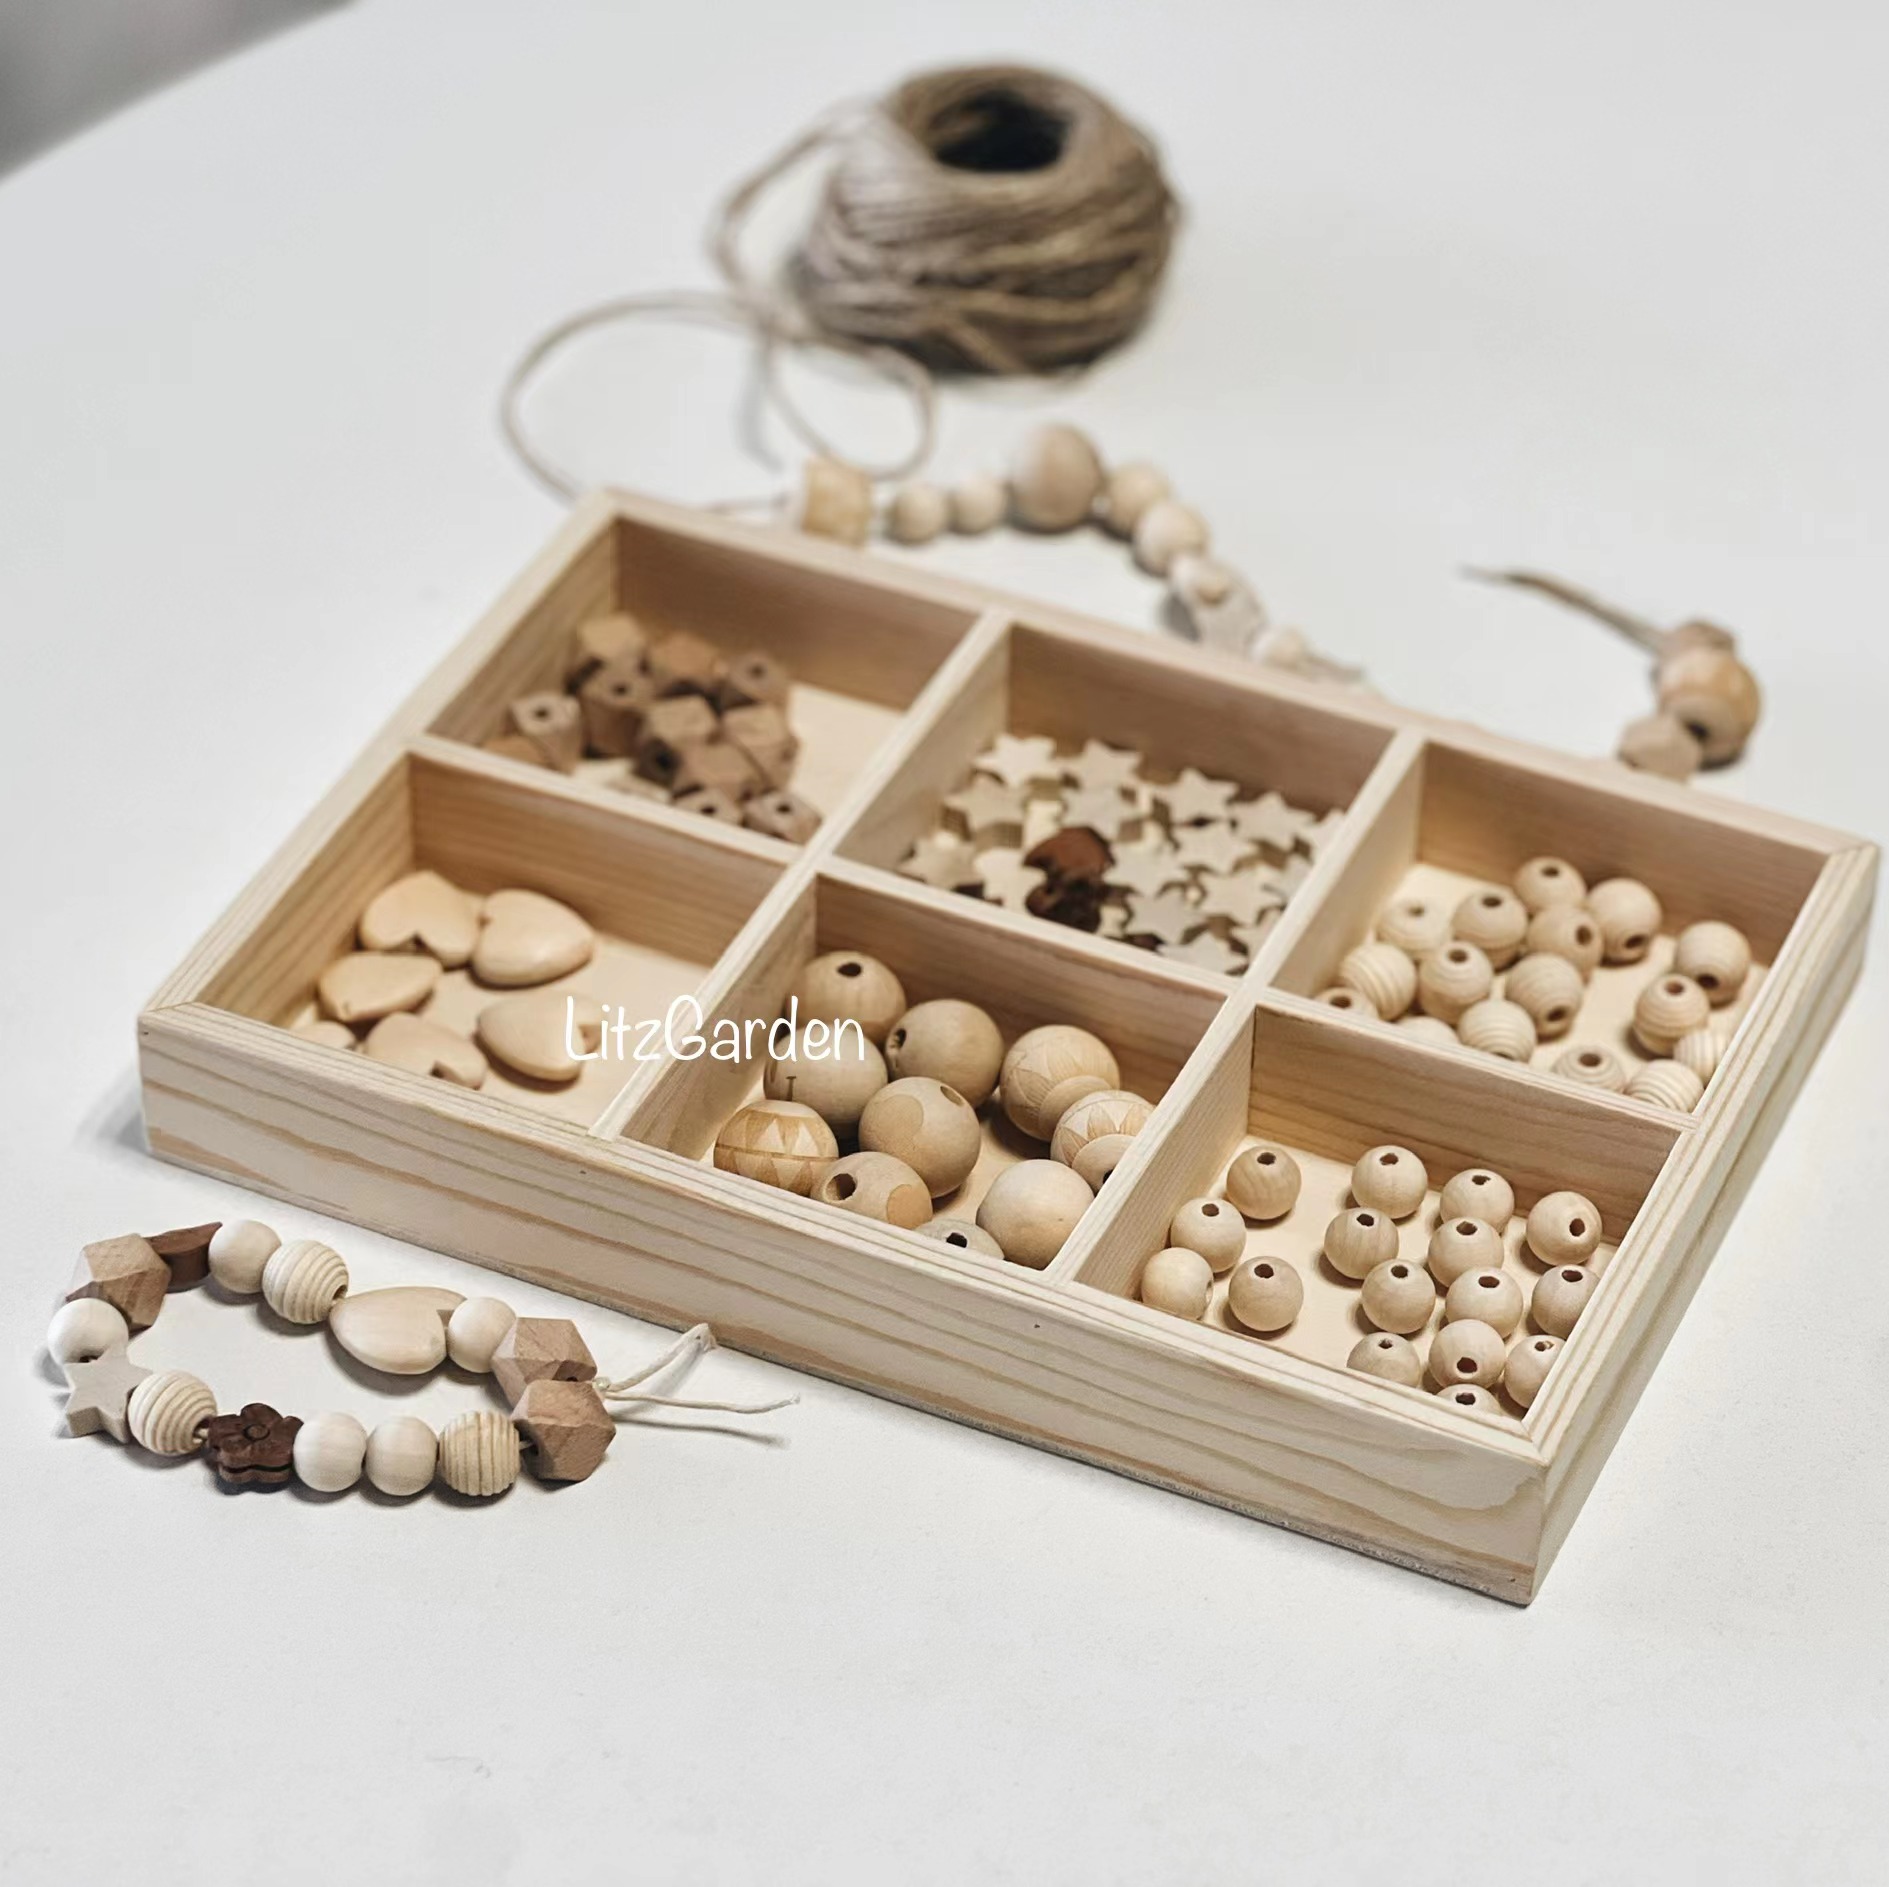 【礼遇现货】礼遇LitzGarden自制串珠早教教具精细动作木制玩具